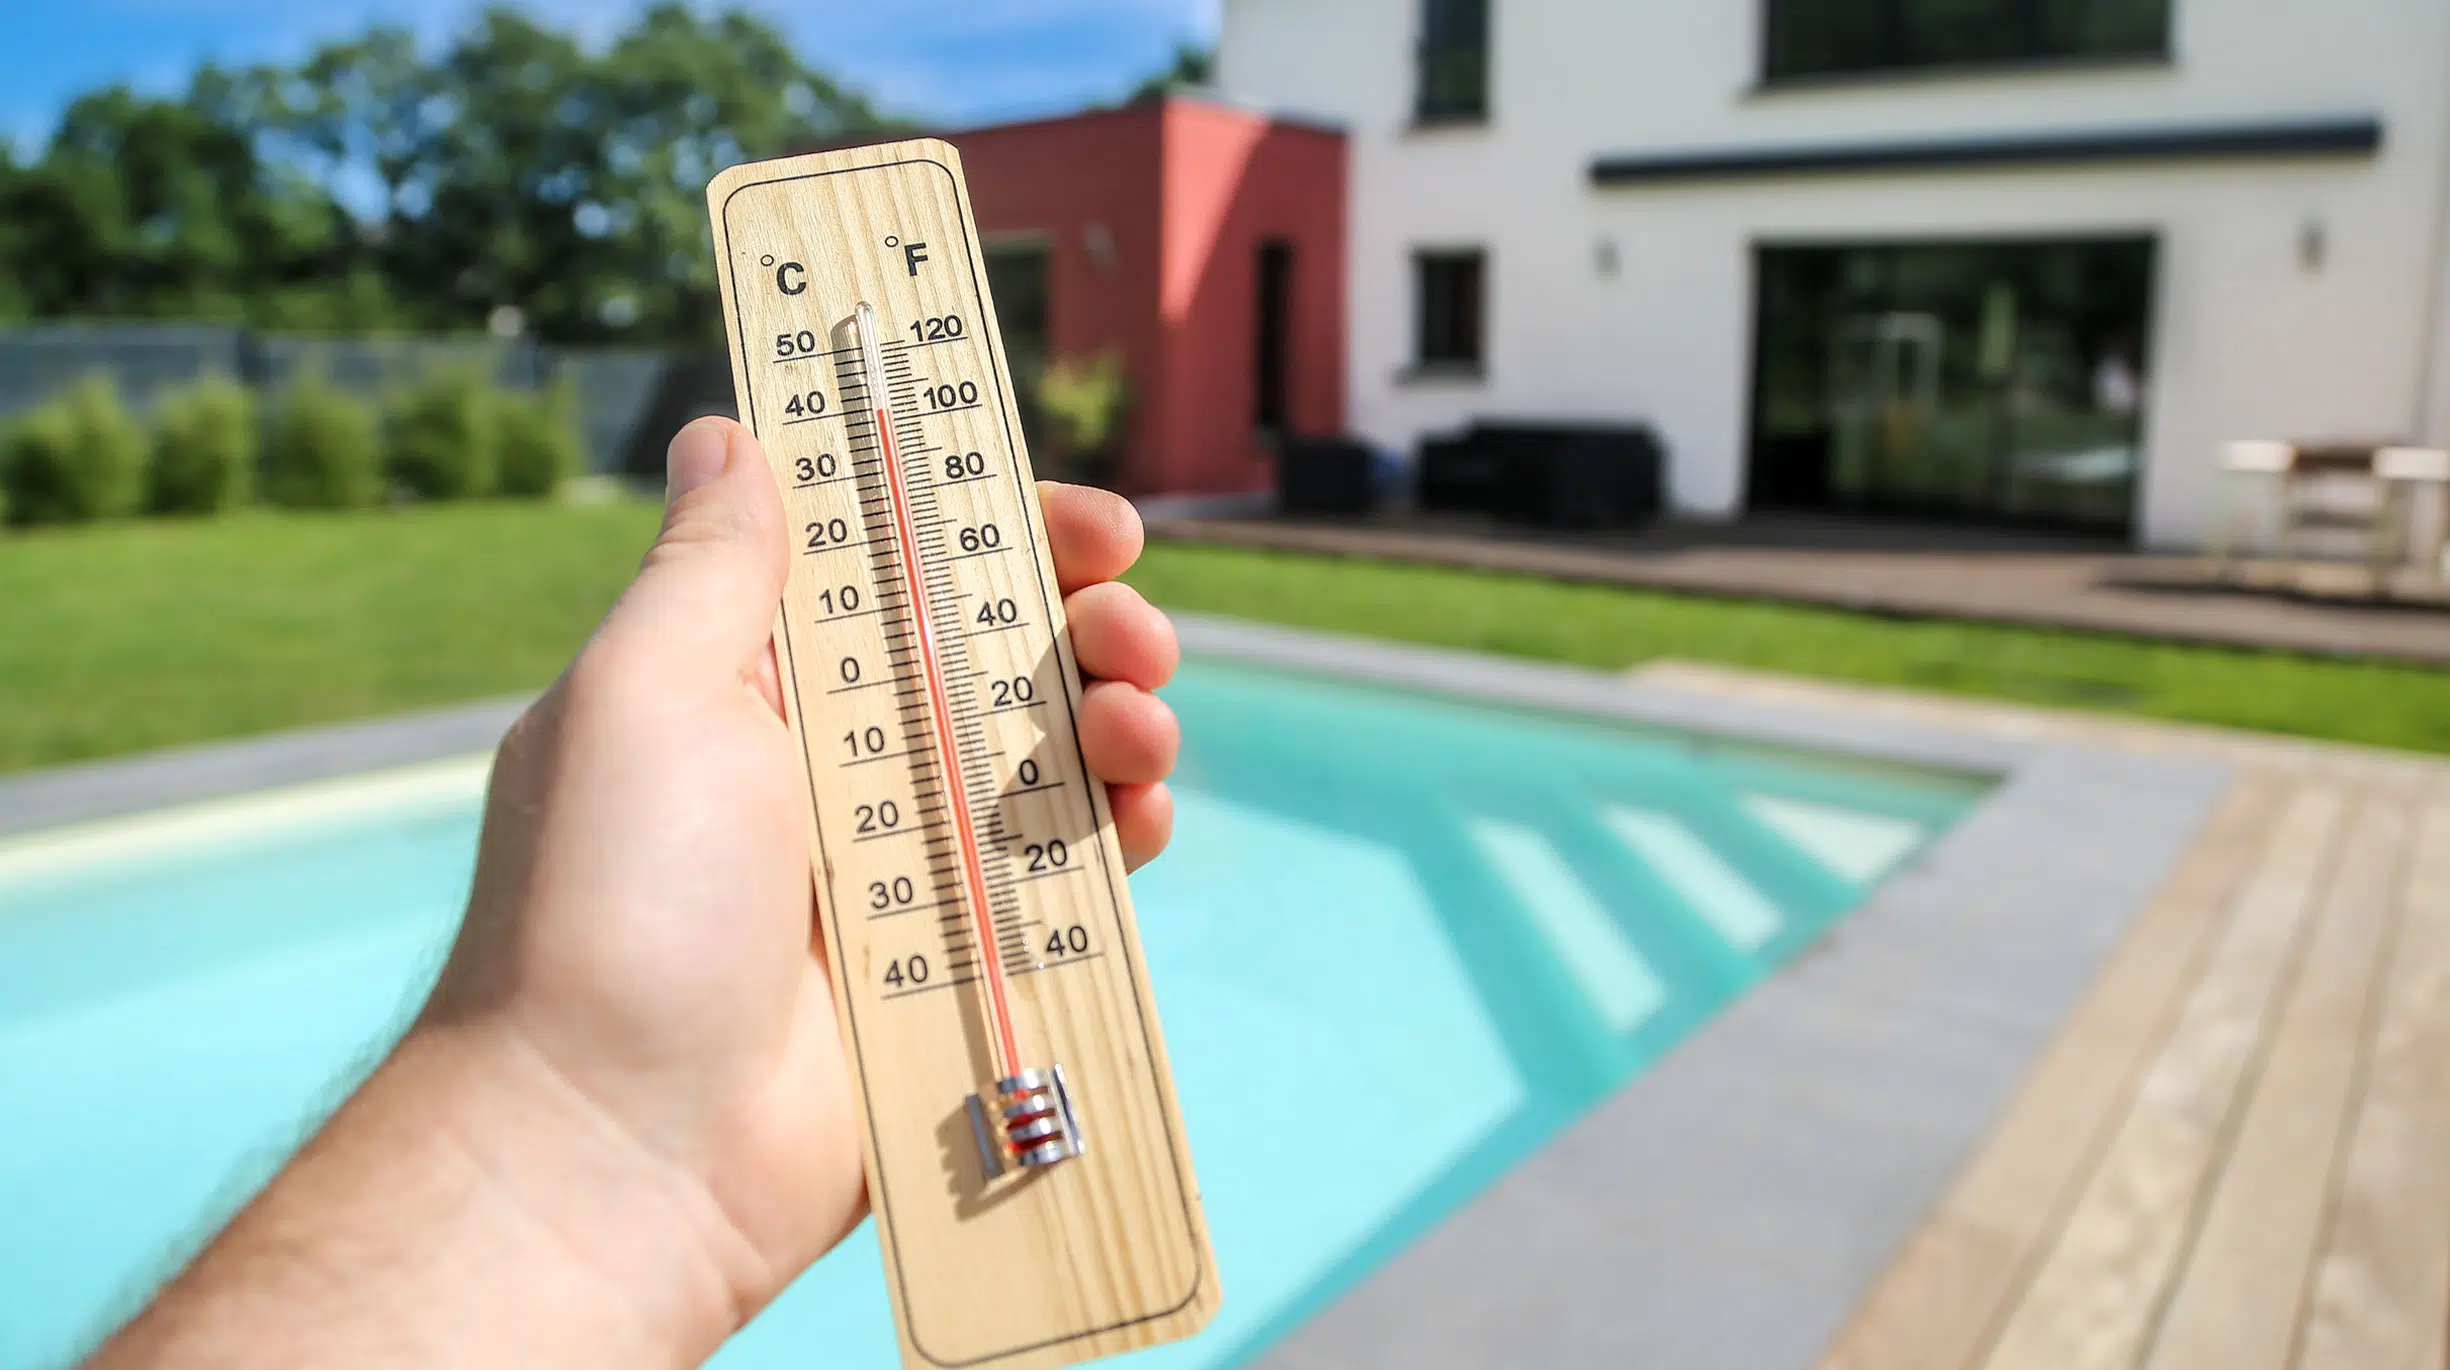 Traiter l’eau de sa piscine coque durant les fortes chaleurs